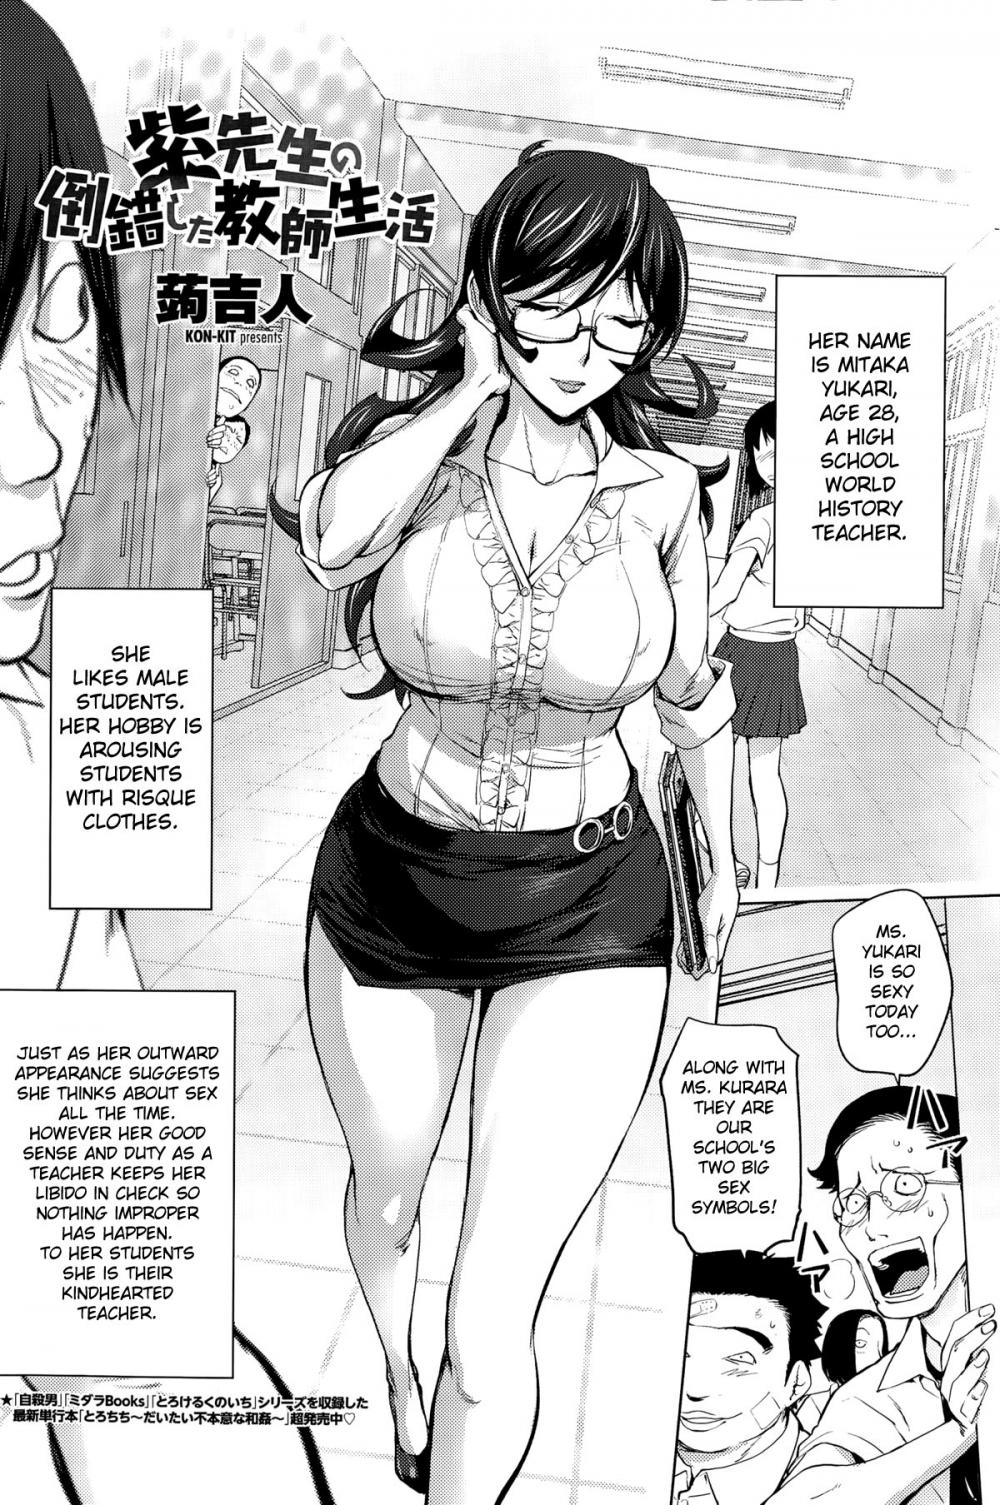 Hentai Manga Comic-Ms. Yukari's Perverted Teacher Livelihood-Read-2